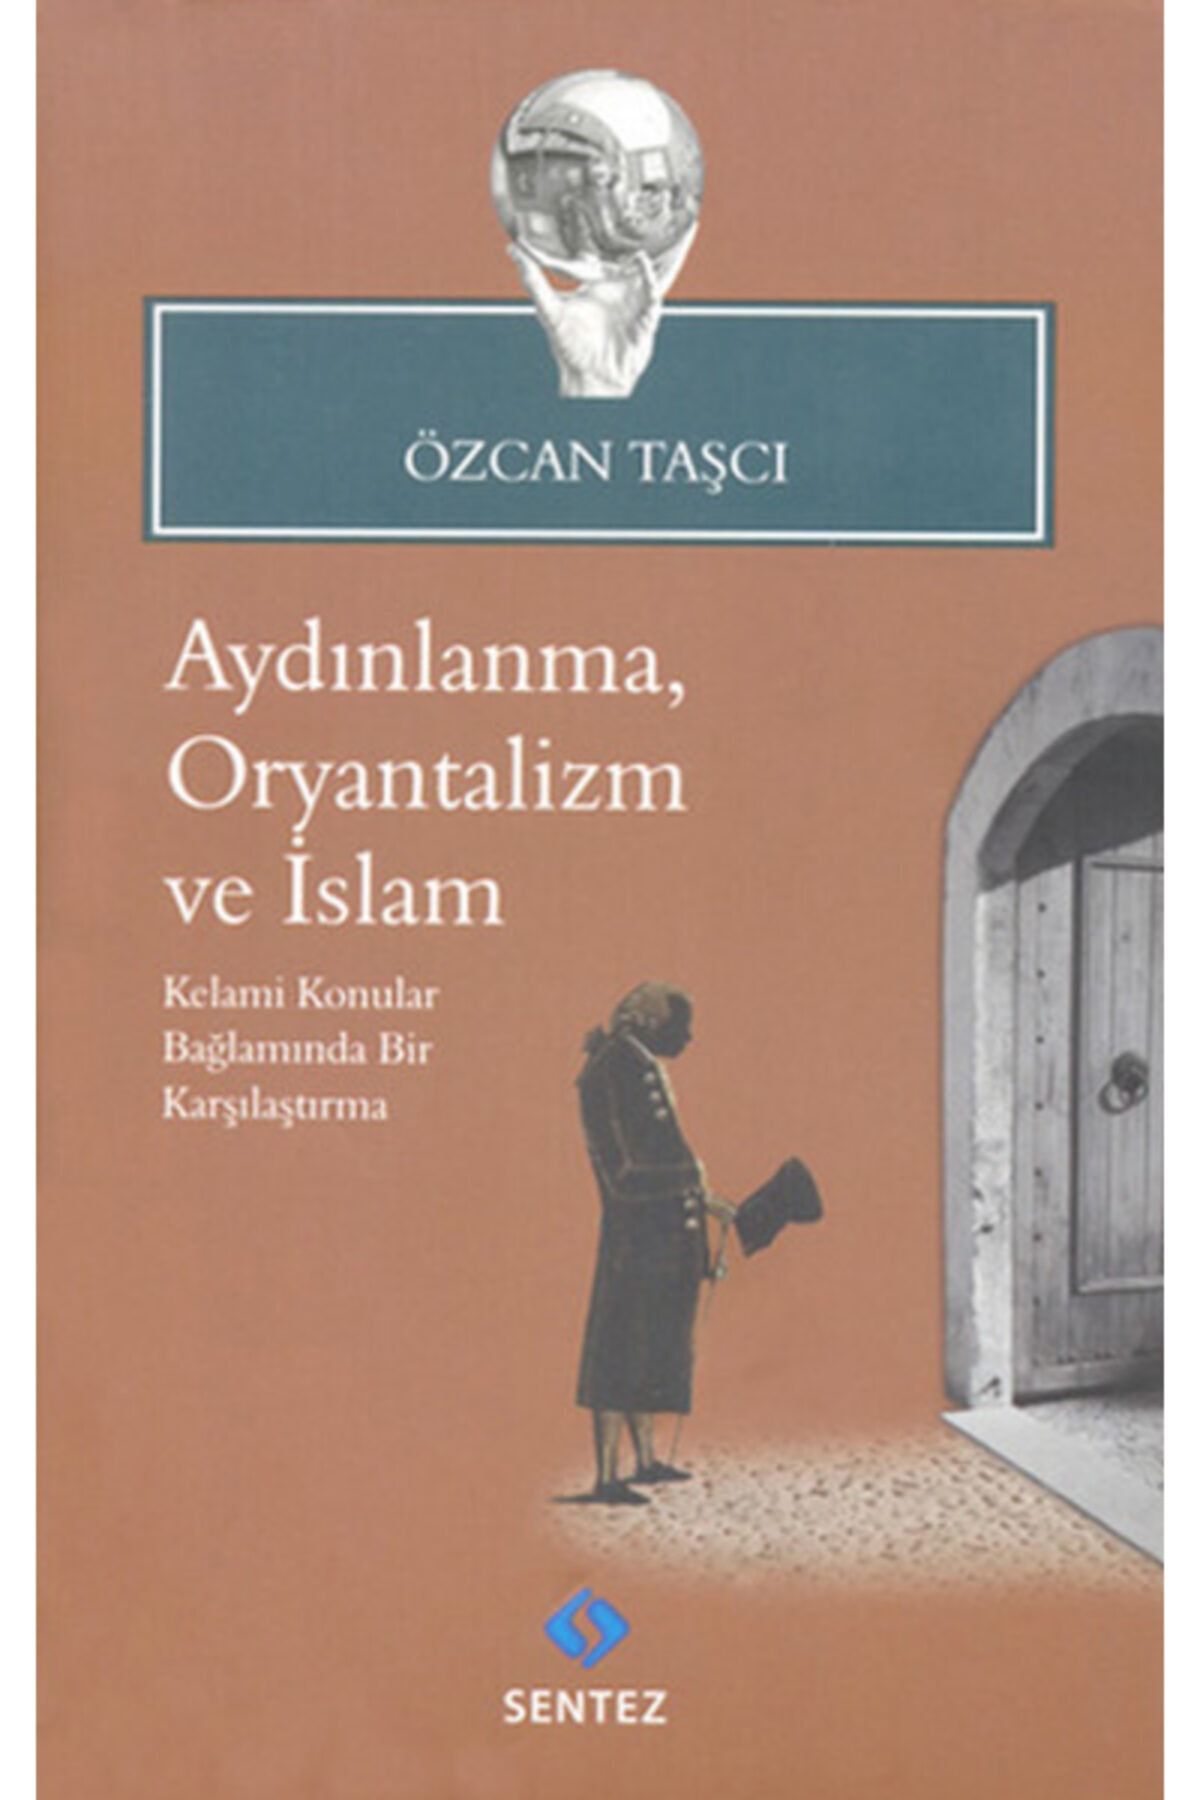 Sentez Yayınları Aydınlanma, Oryantalizm Ve Islam / Özcan Taşçı